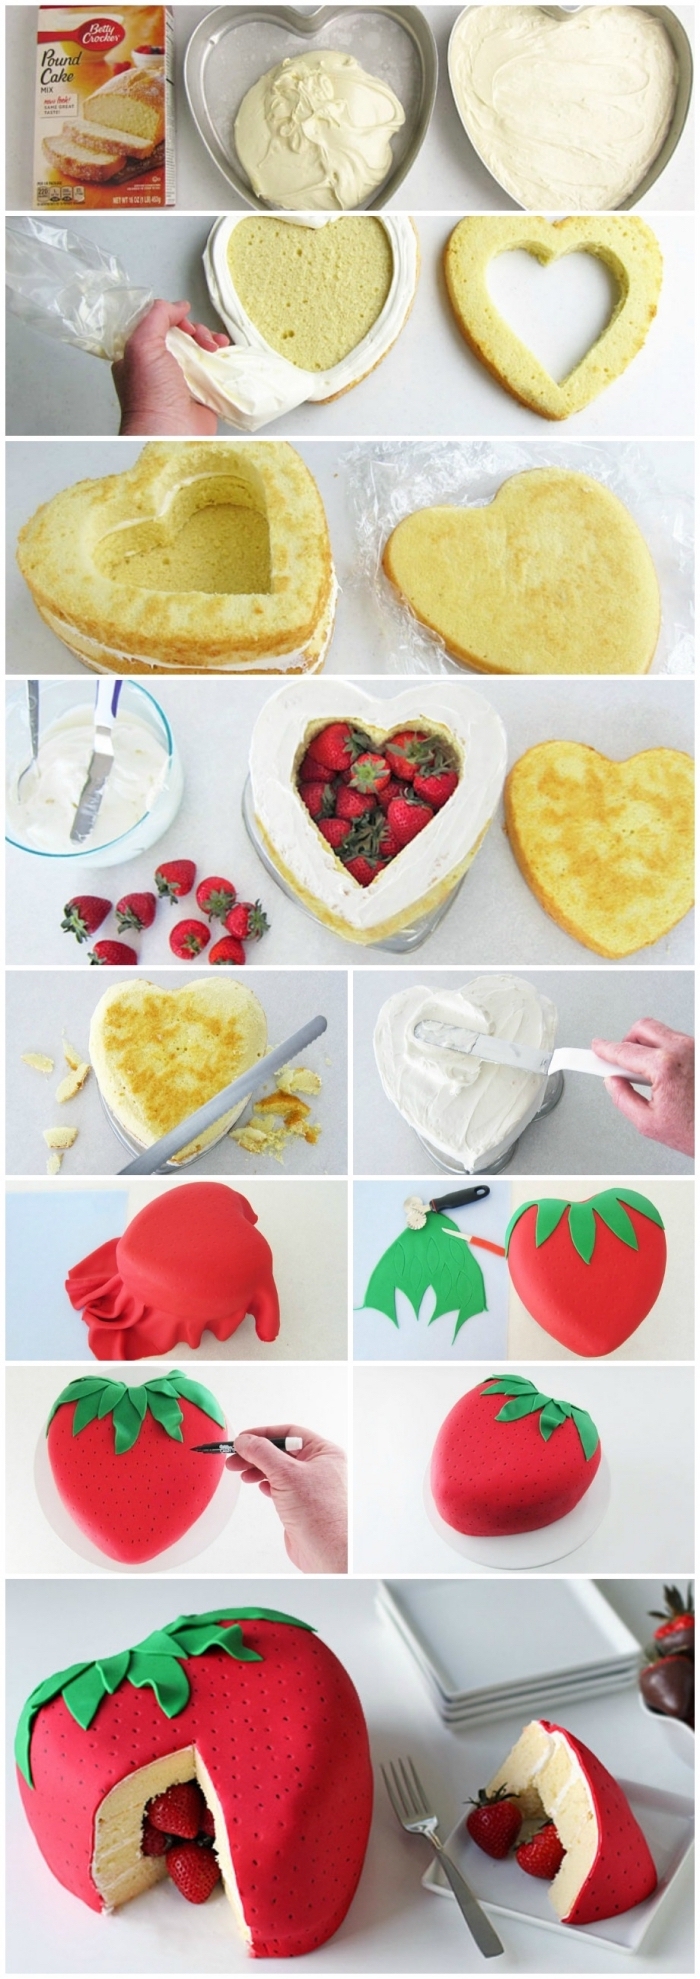 tutoriel pour faire un gateau pinata aux fraises en forme de coeur, recouvert de pâte à sucre